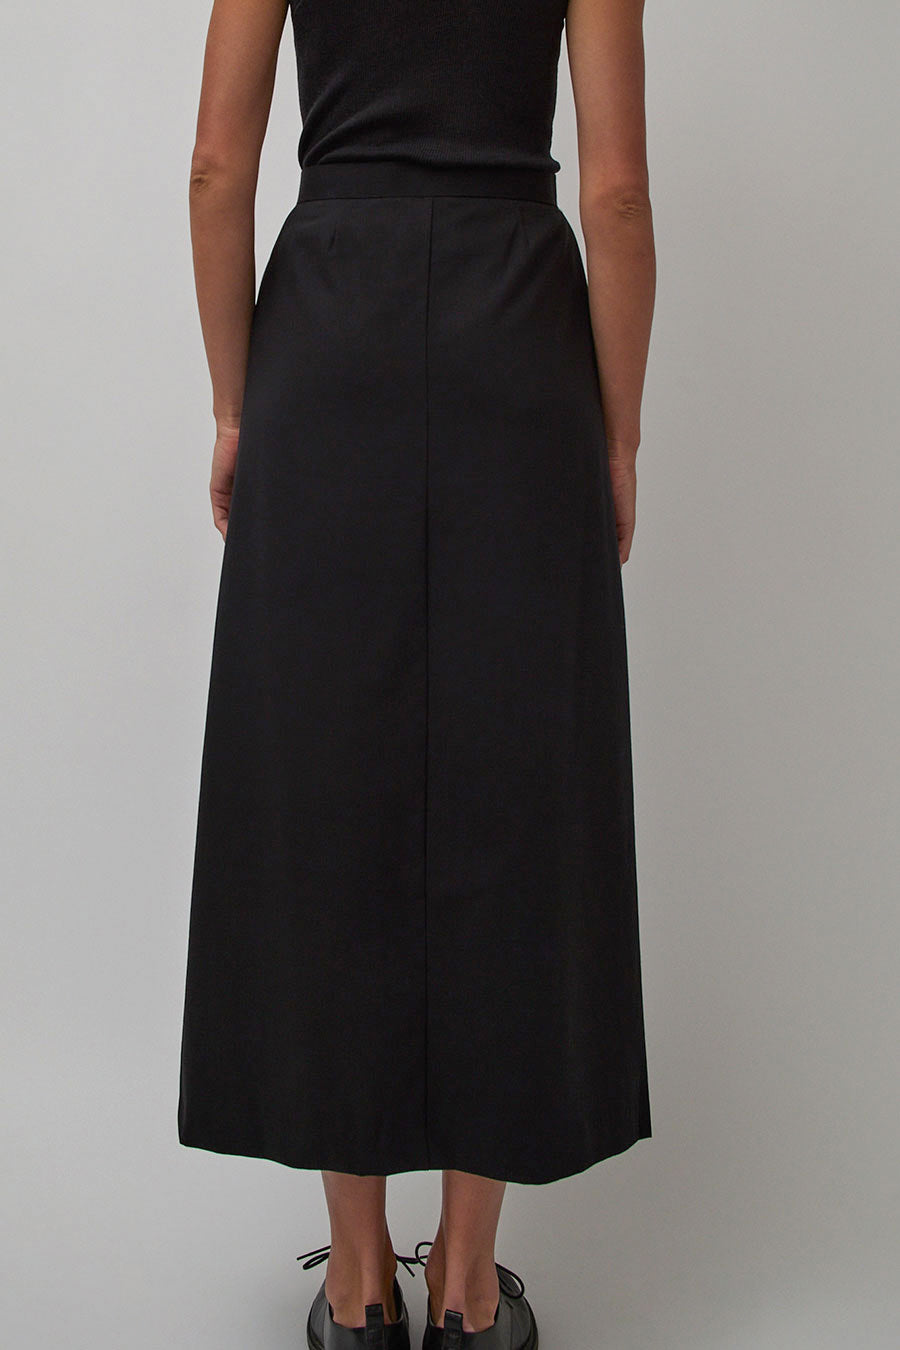 Solaqua The Clemence Skirt in Noir